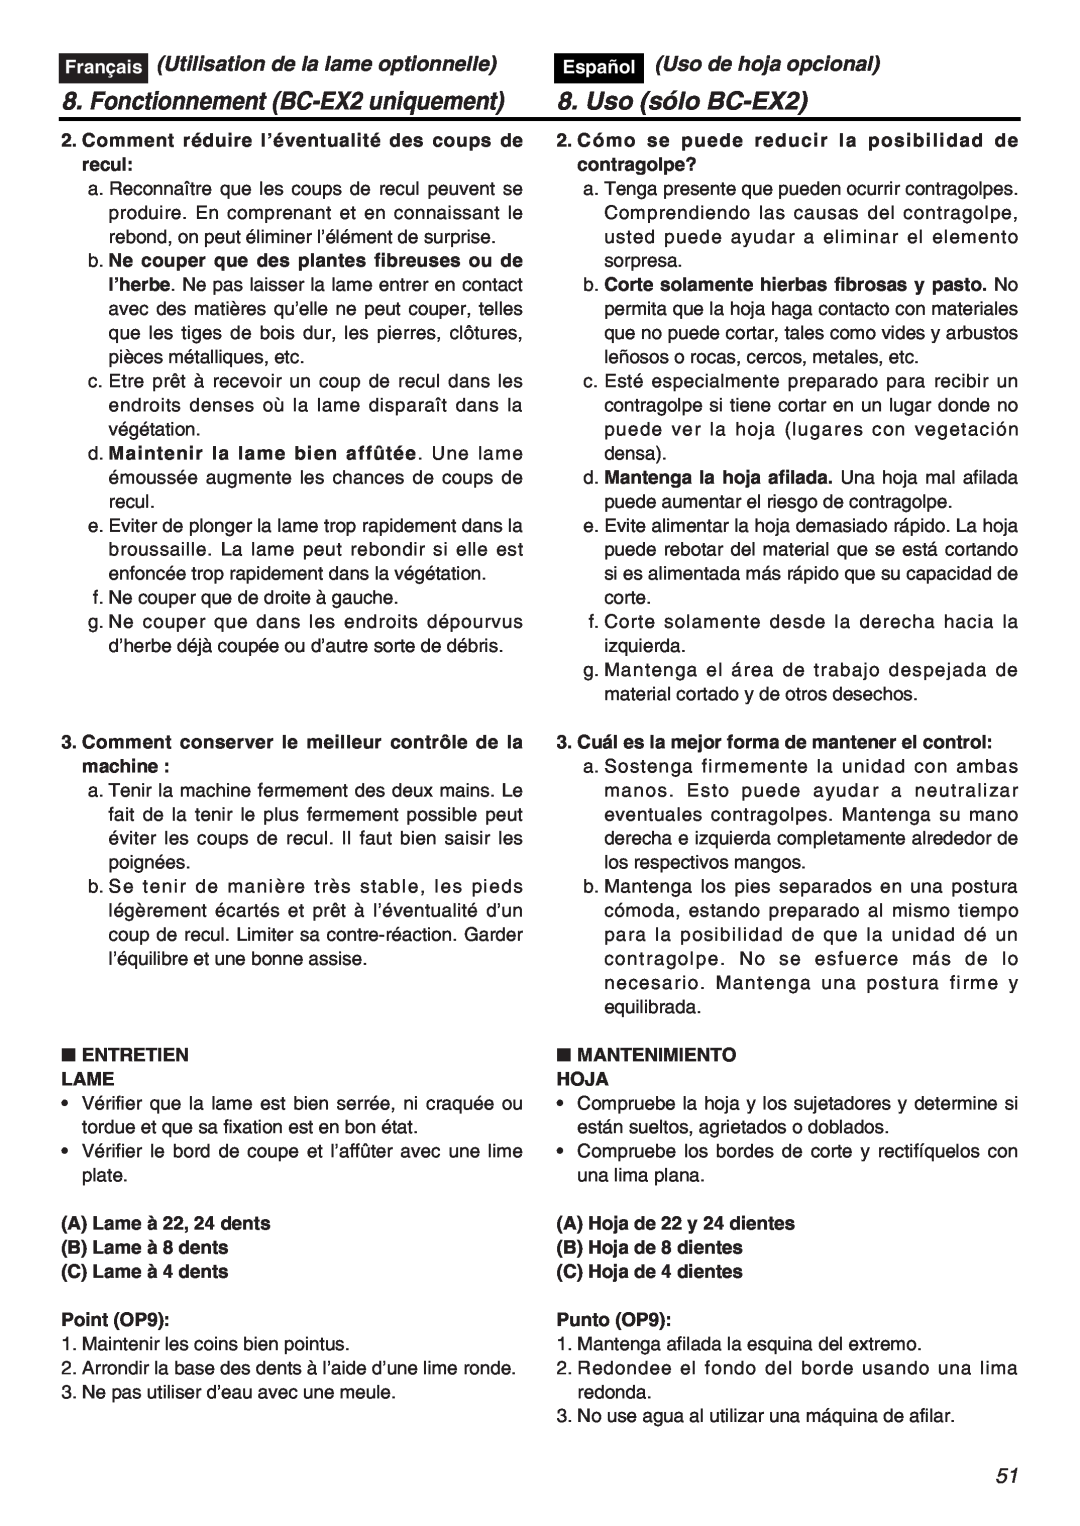 RedMax EXZ2401S-PH manual Fonctionnement BC-EX2 uniquement, Uso sólo BC-EX2, Utilisation de la lame optionnelle, Français 